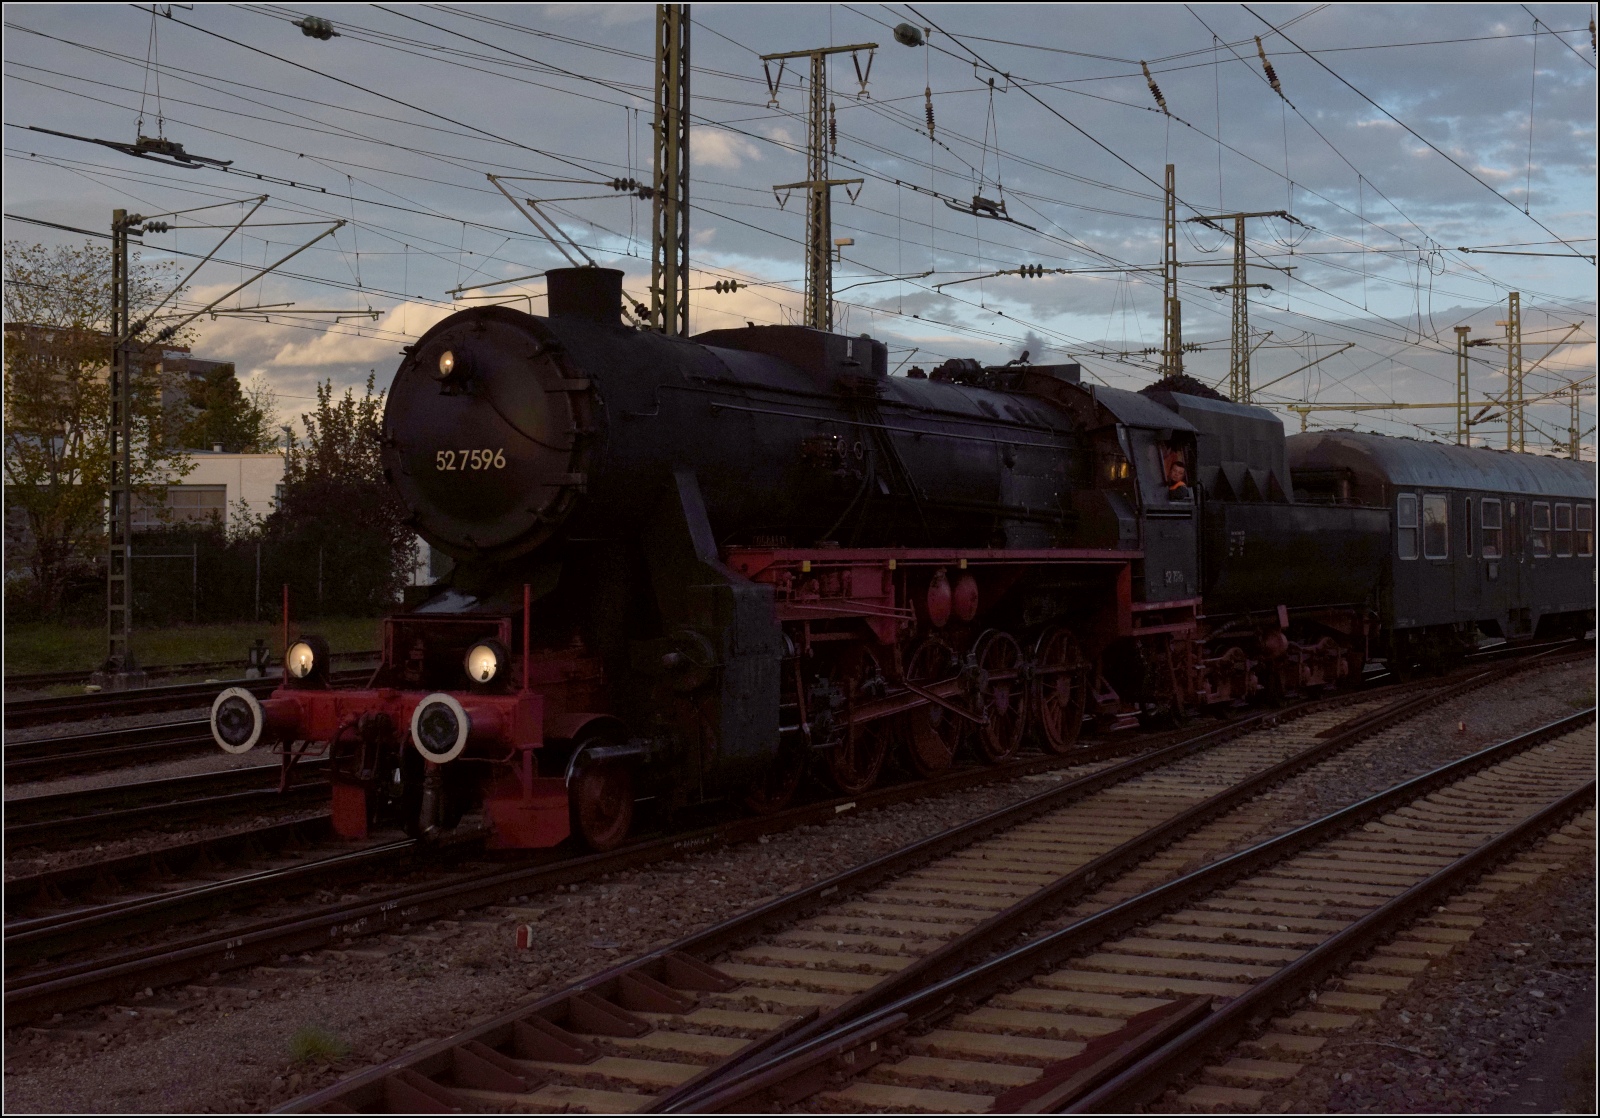 Schienenverkehr am Schienerberg.

52 7596 mit ihrem EFZ-Sonderzug für die SEHR&RS bei Einfahrt nach Singen auf der letzten Fahrt des Tages. Oktober 2022.